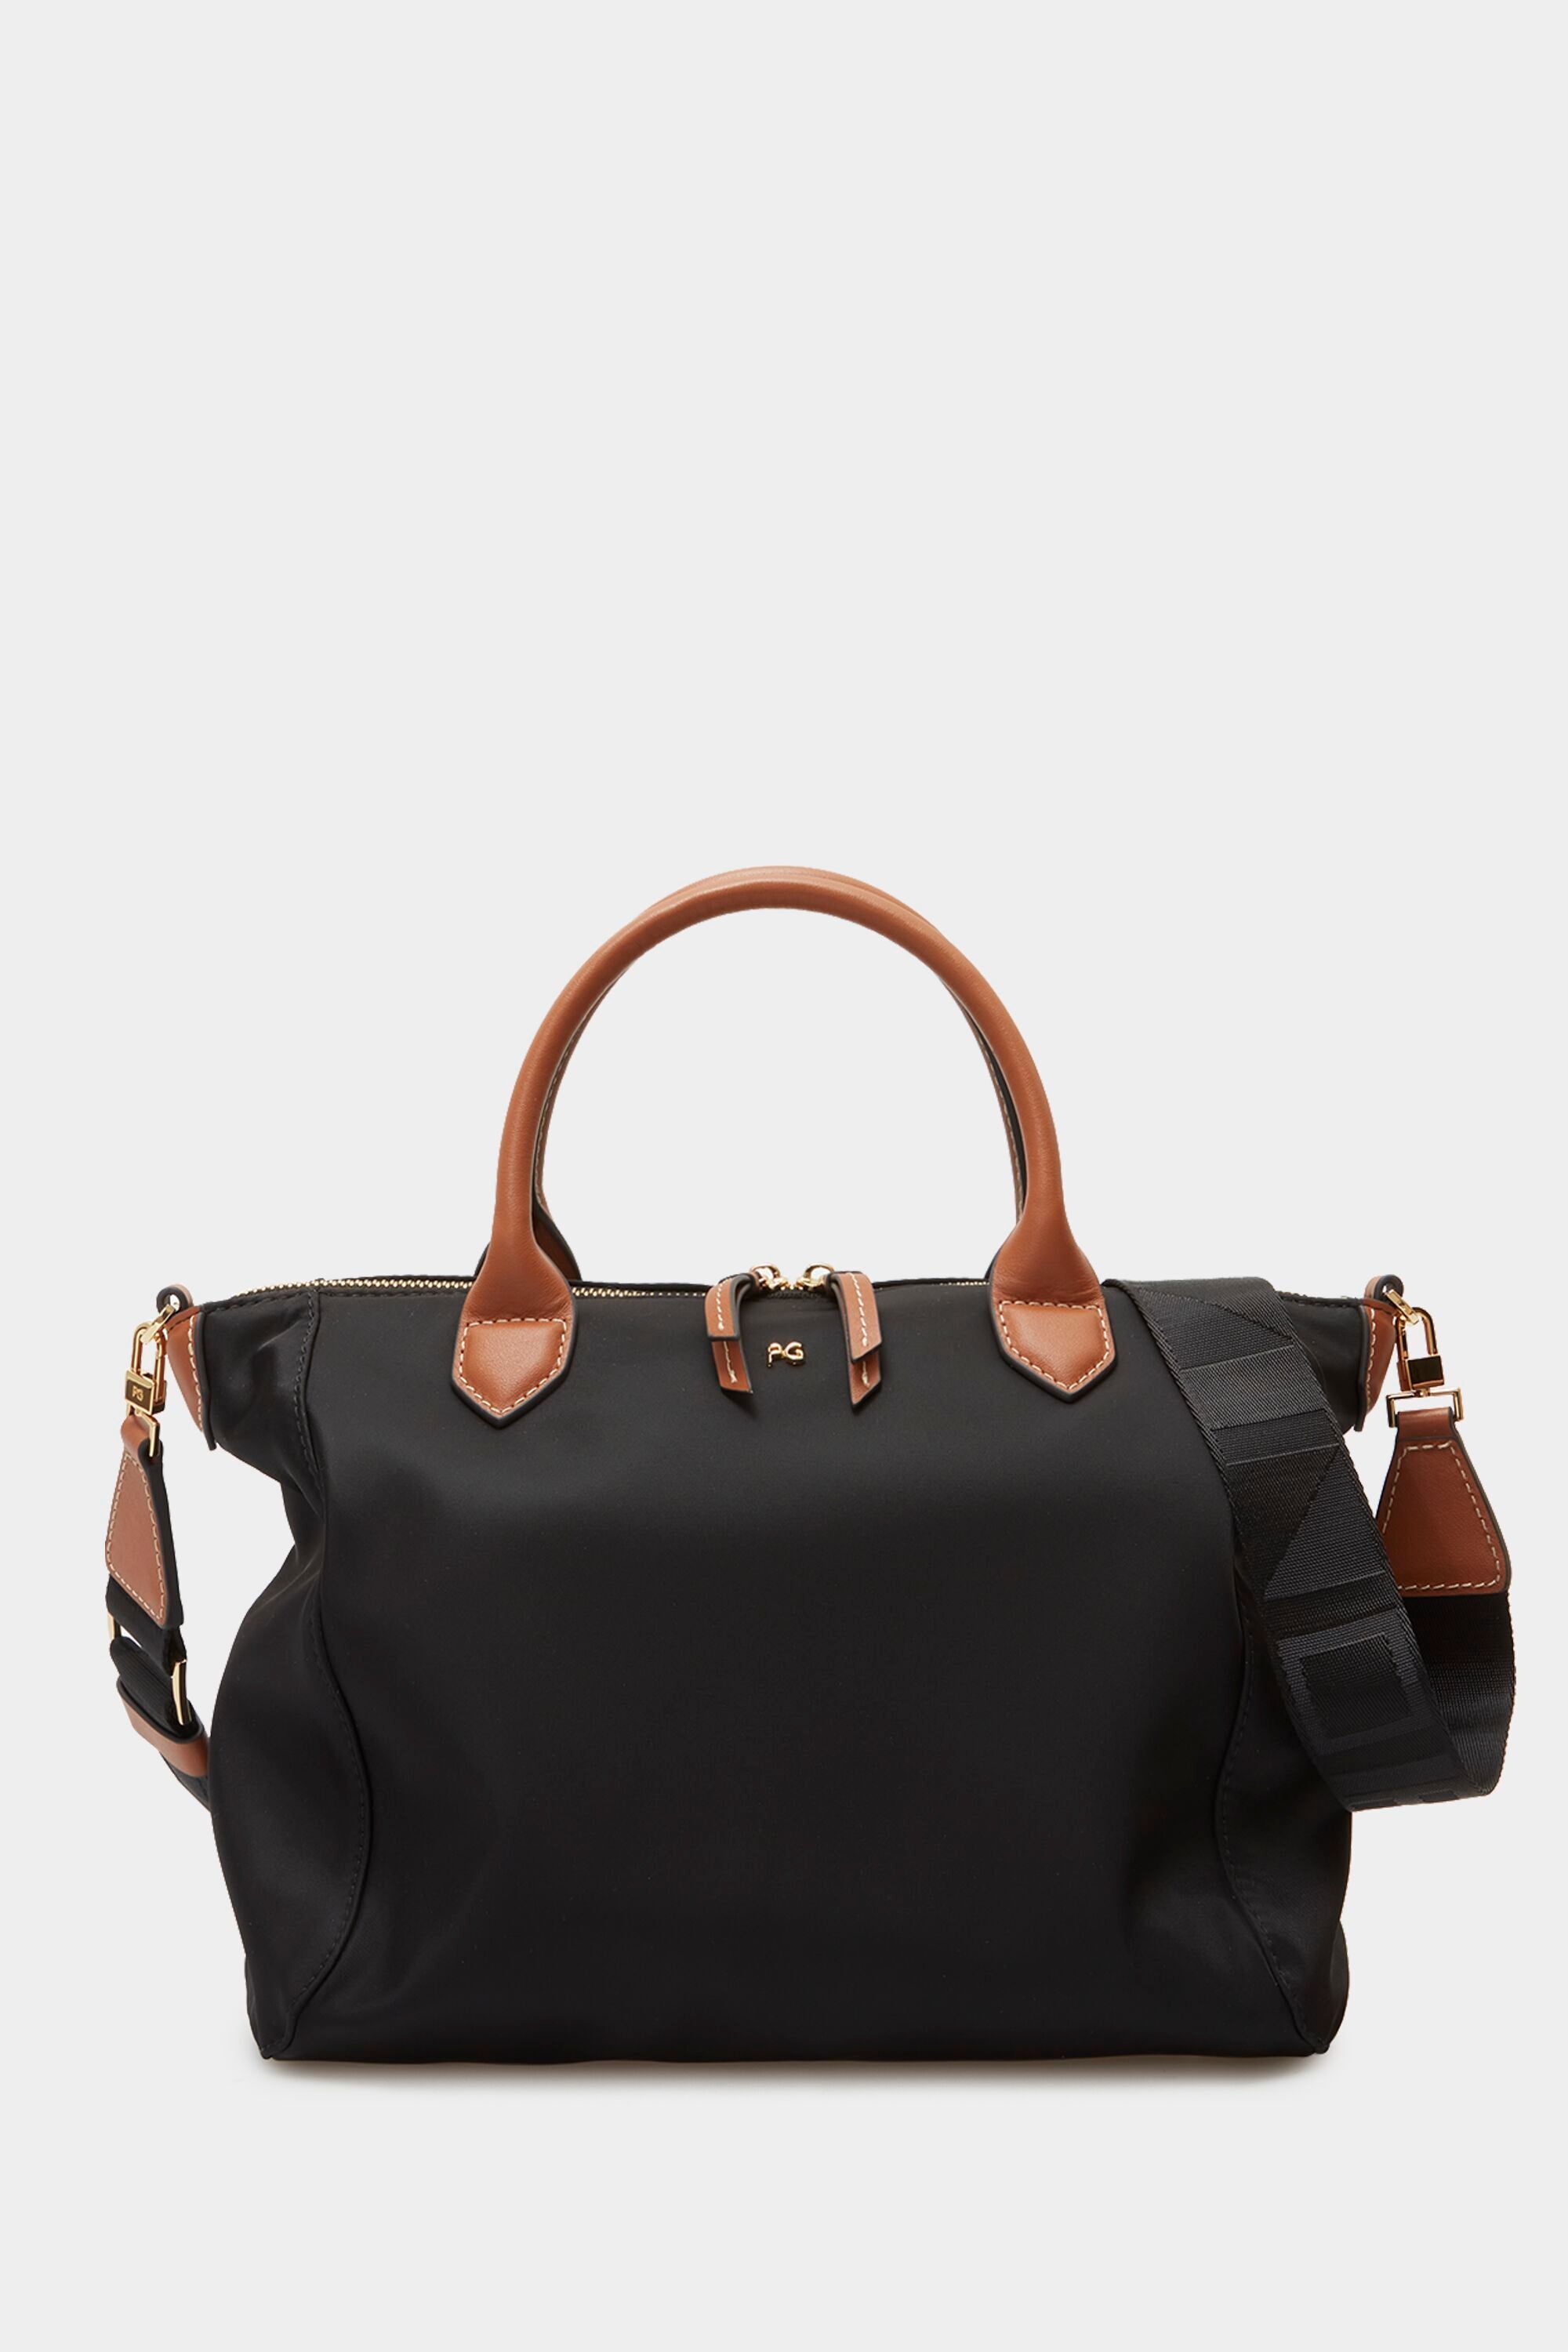 Longchamp Boxford Extra Large Travel Bag, Brown